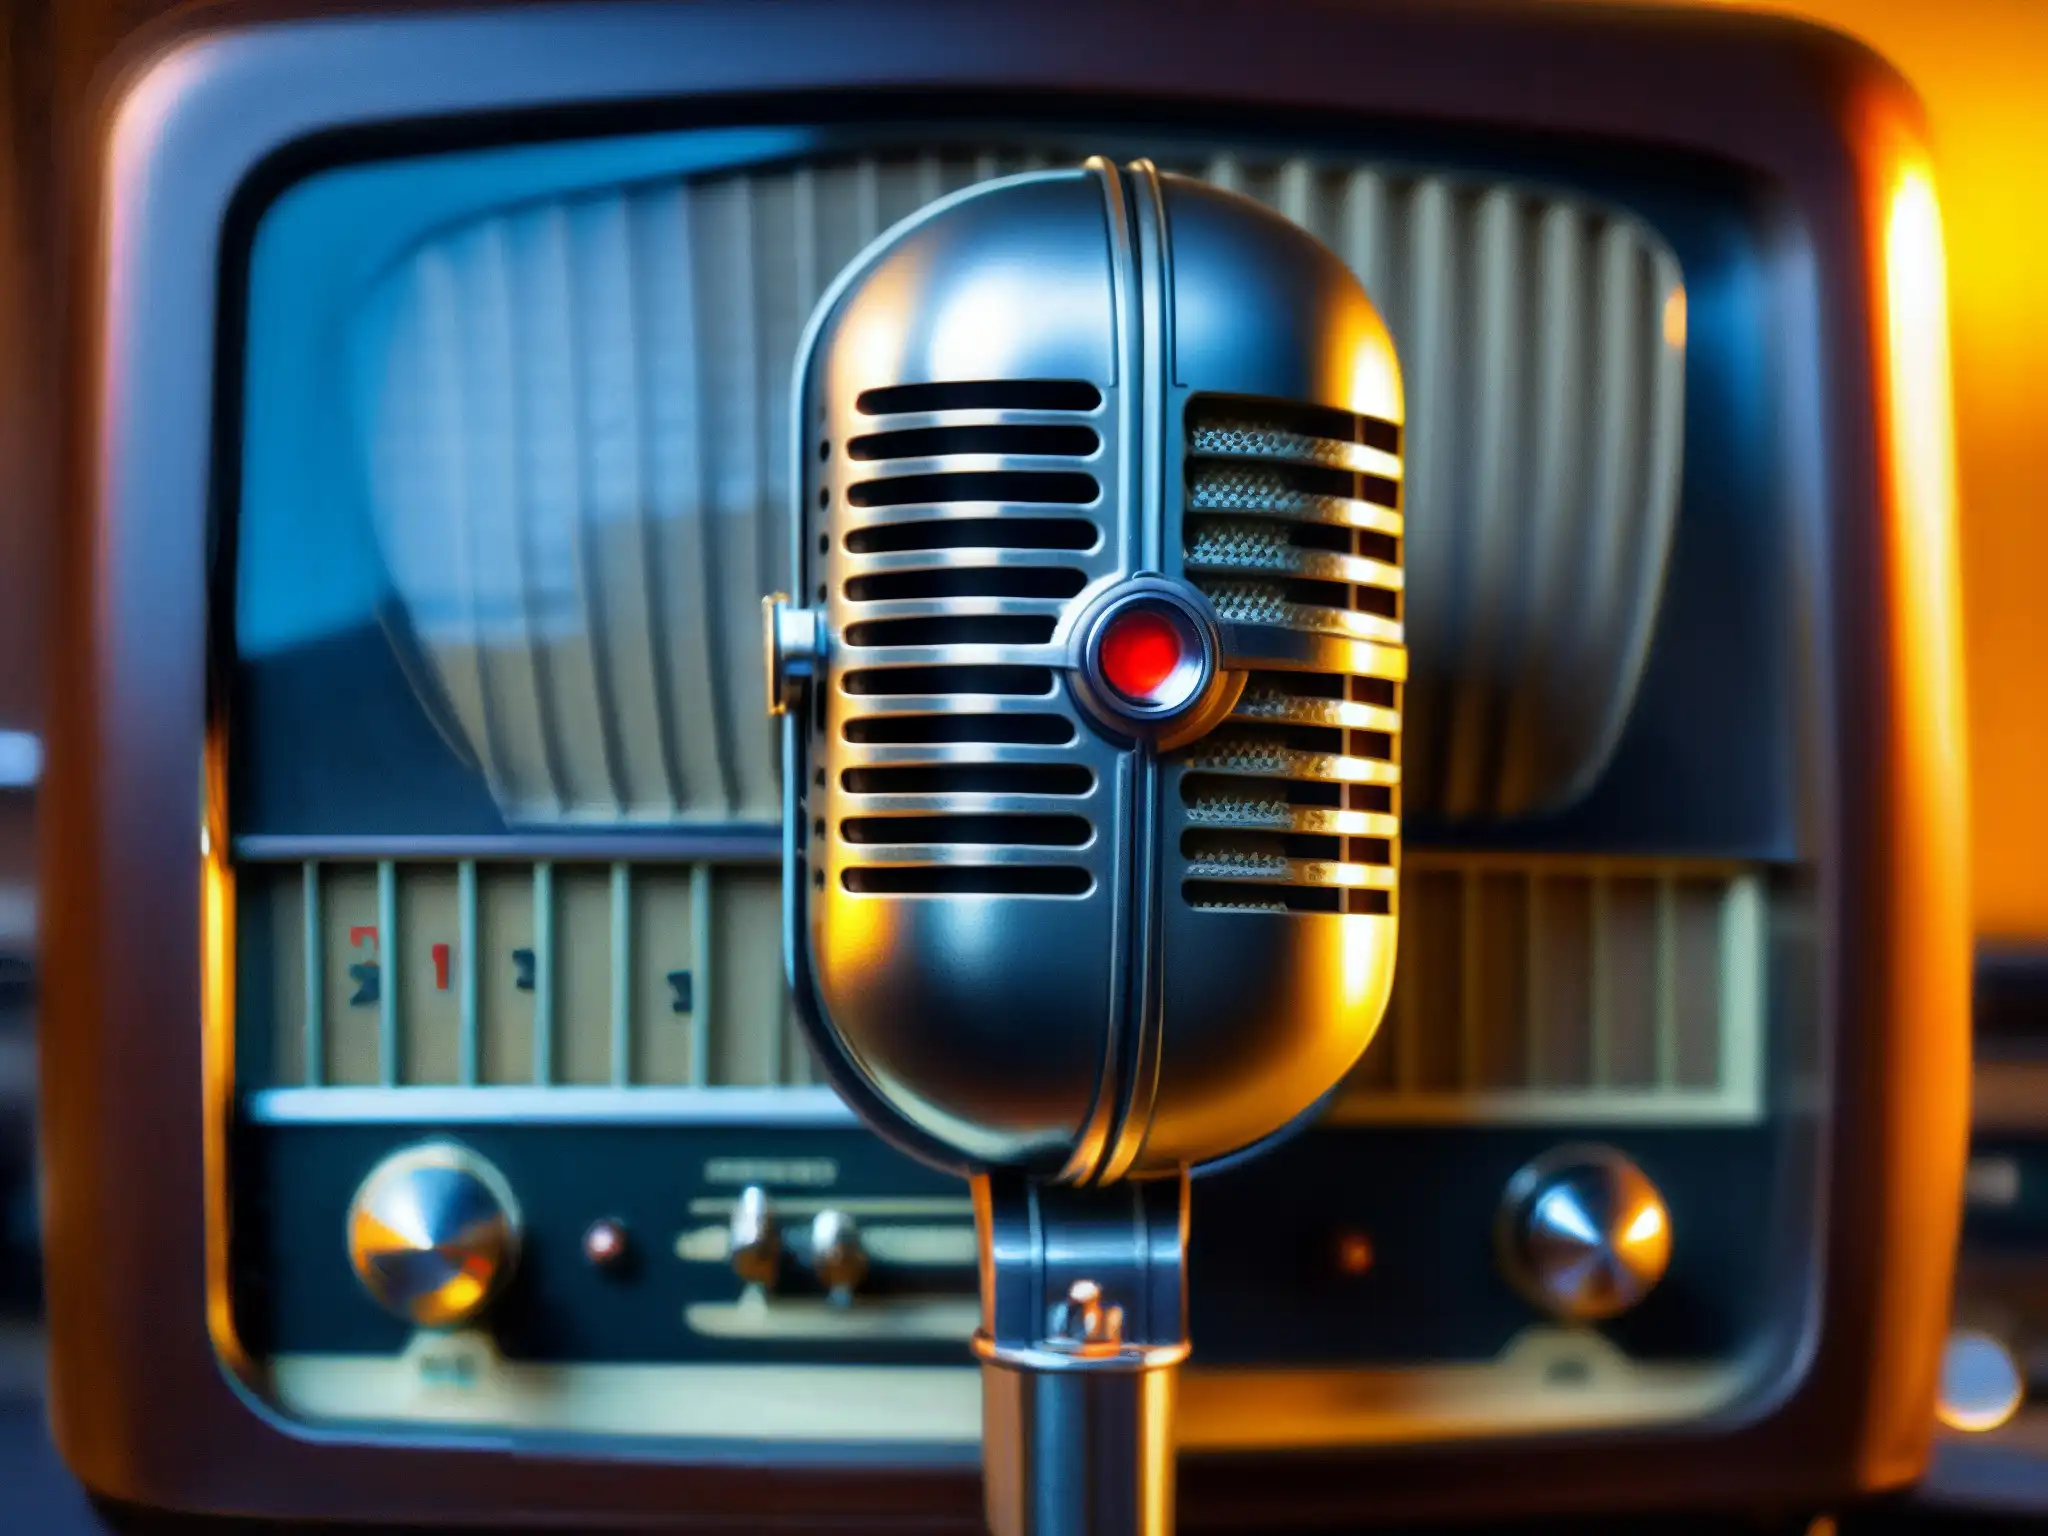 Un micrófono antiguo y desgastado frente a equipos de radio vintage, evocando el enigma detrás de la leyenda